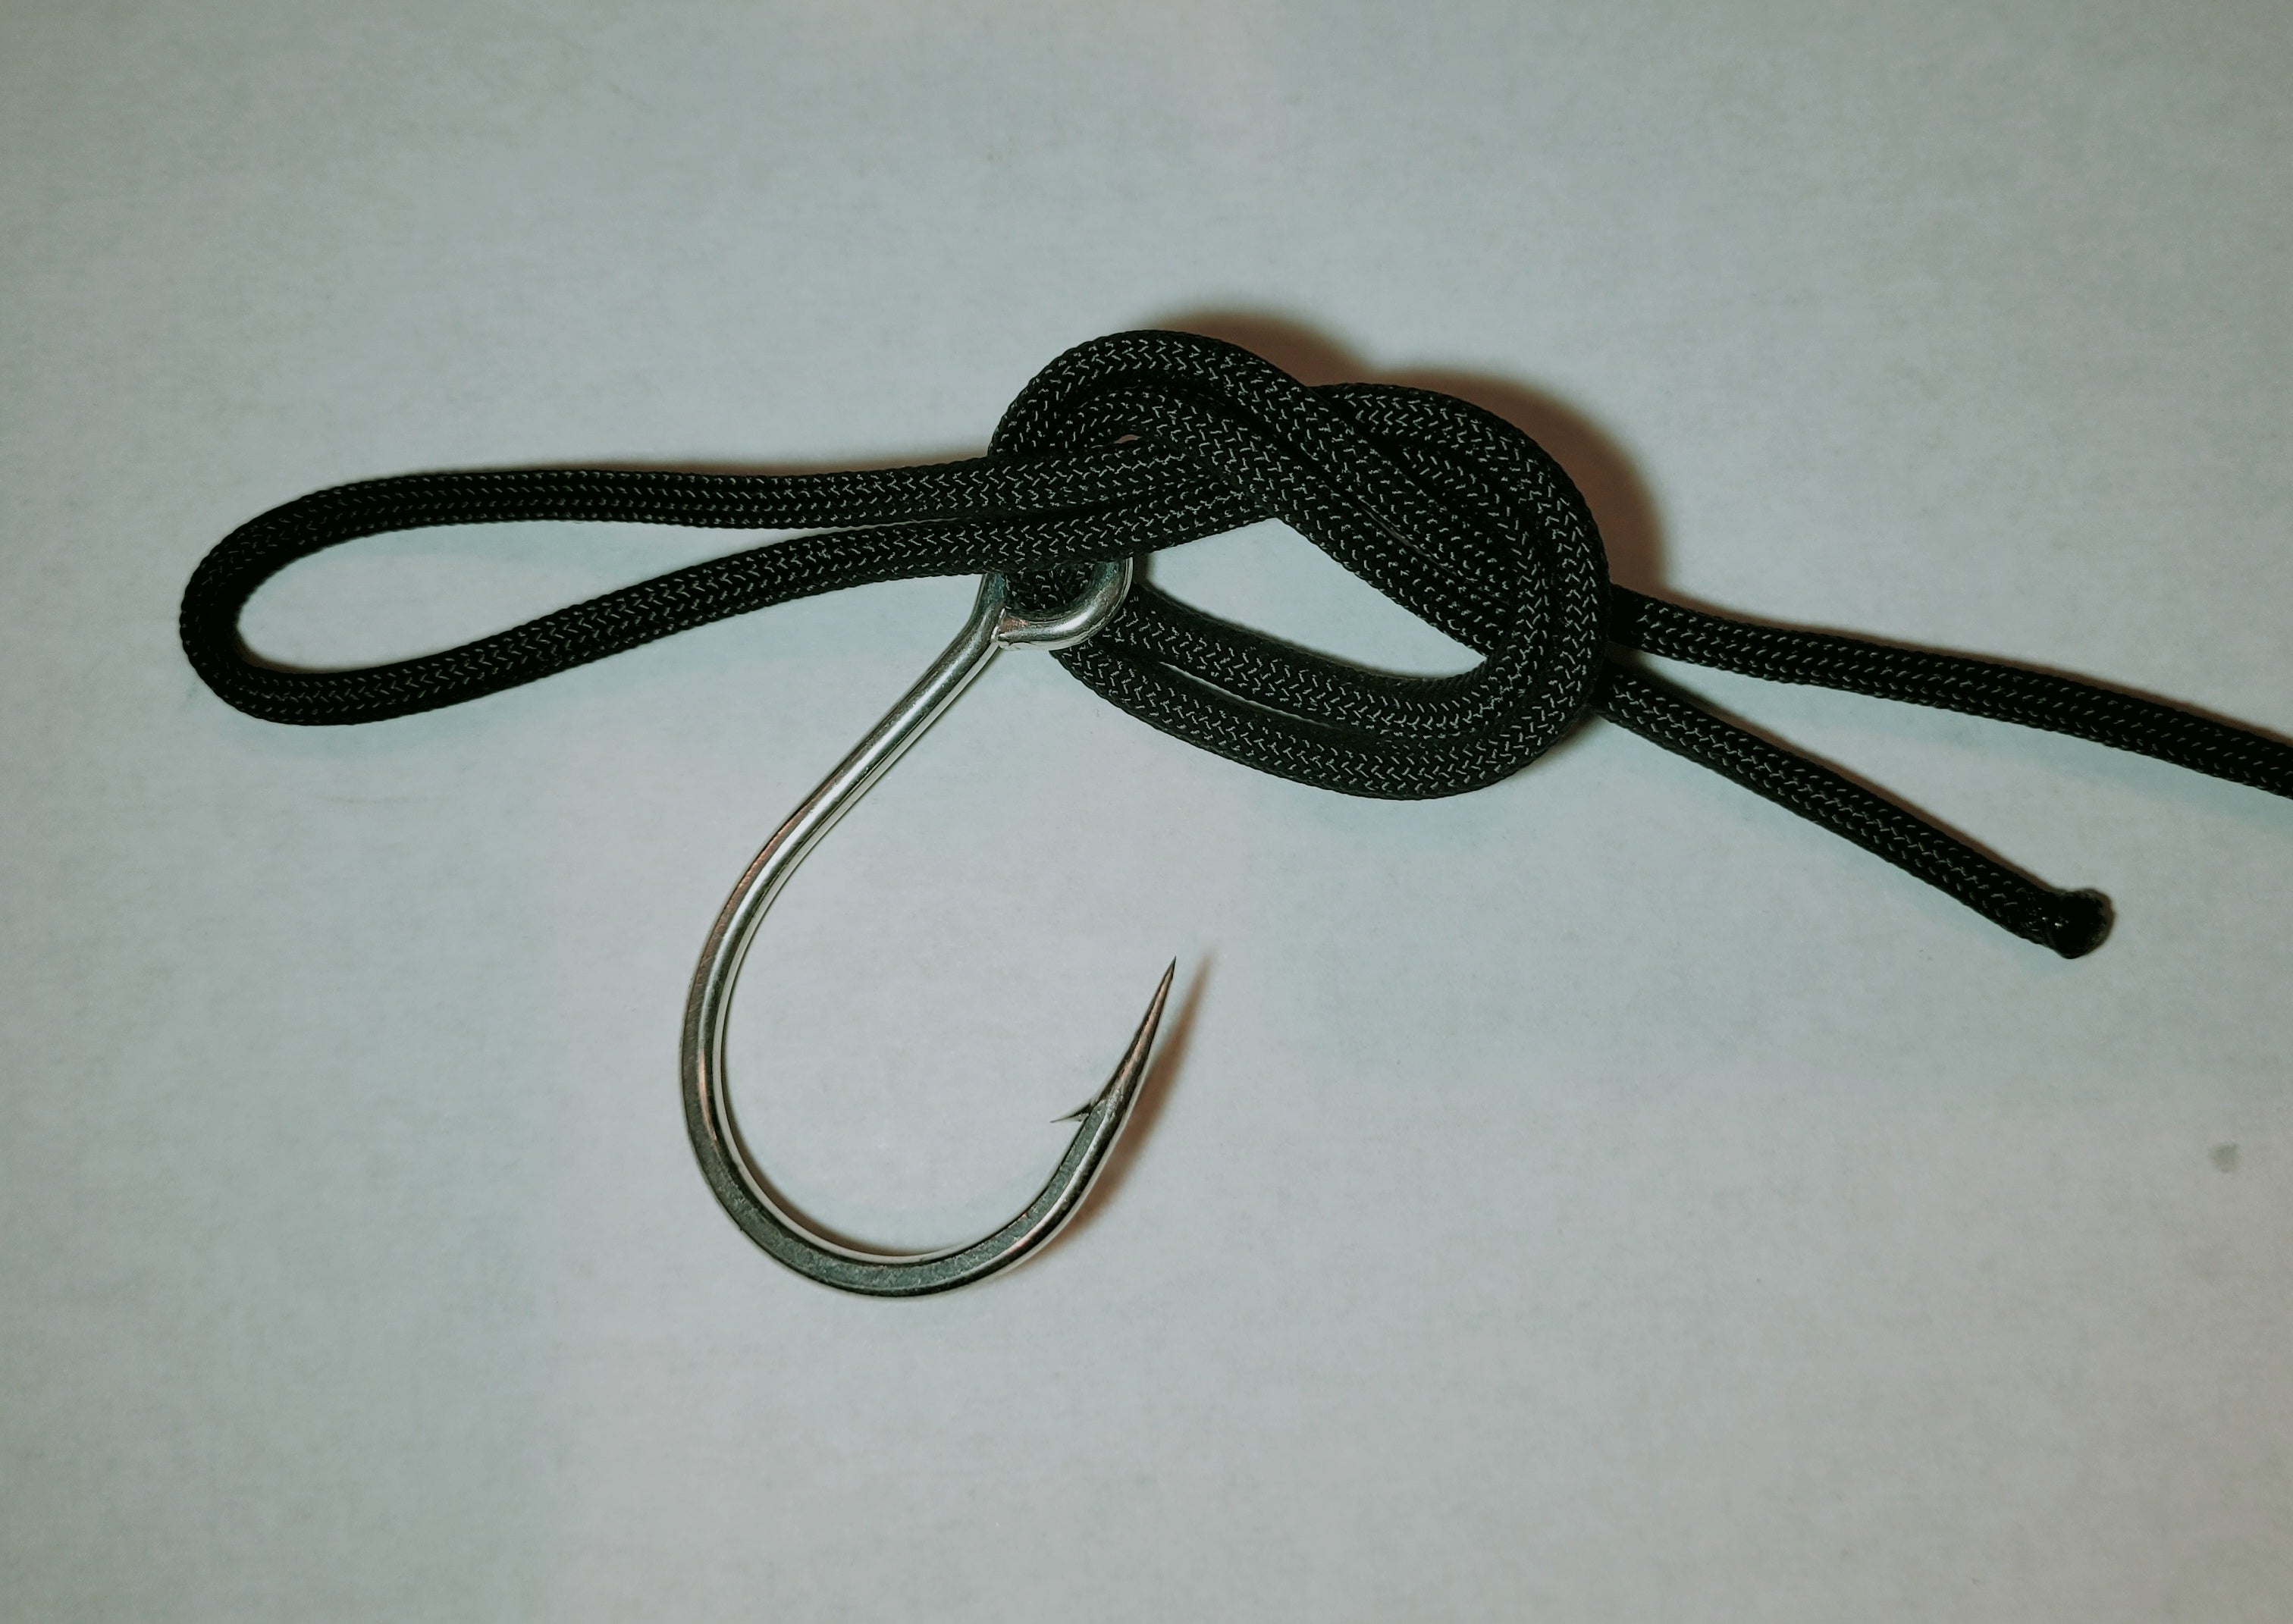 palomar knot fishing knots